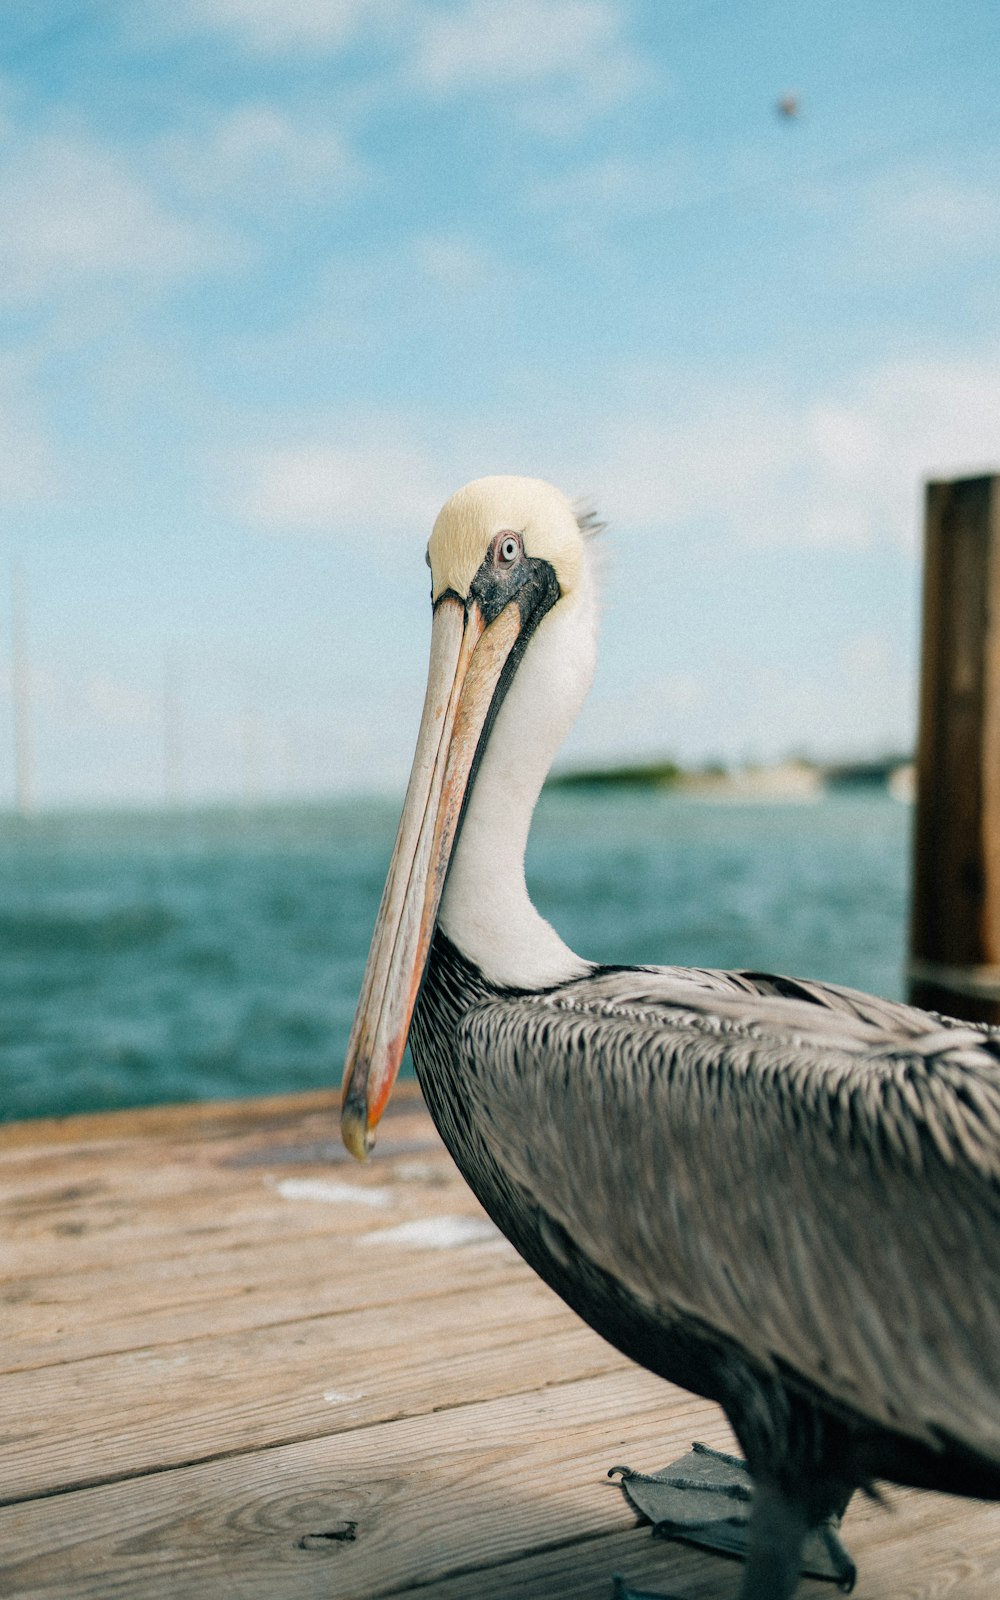 pelicano na doca de madeira marrom durante o dia